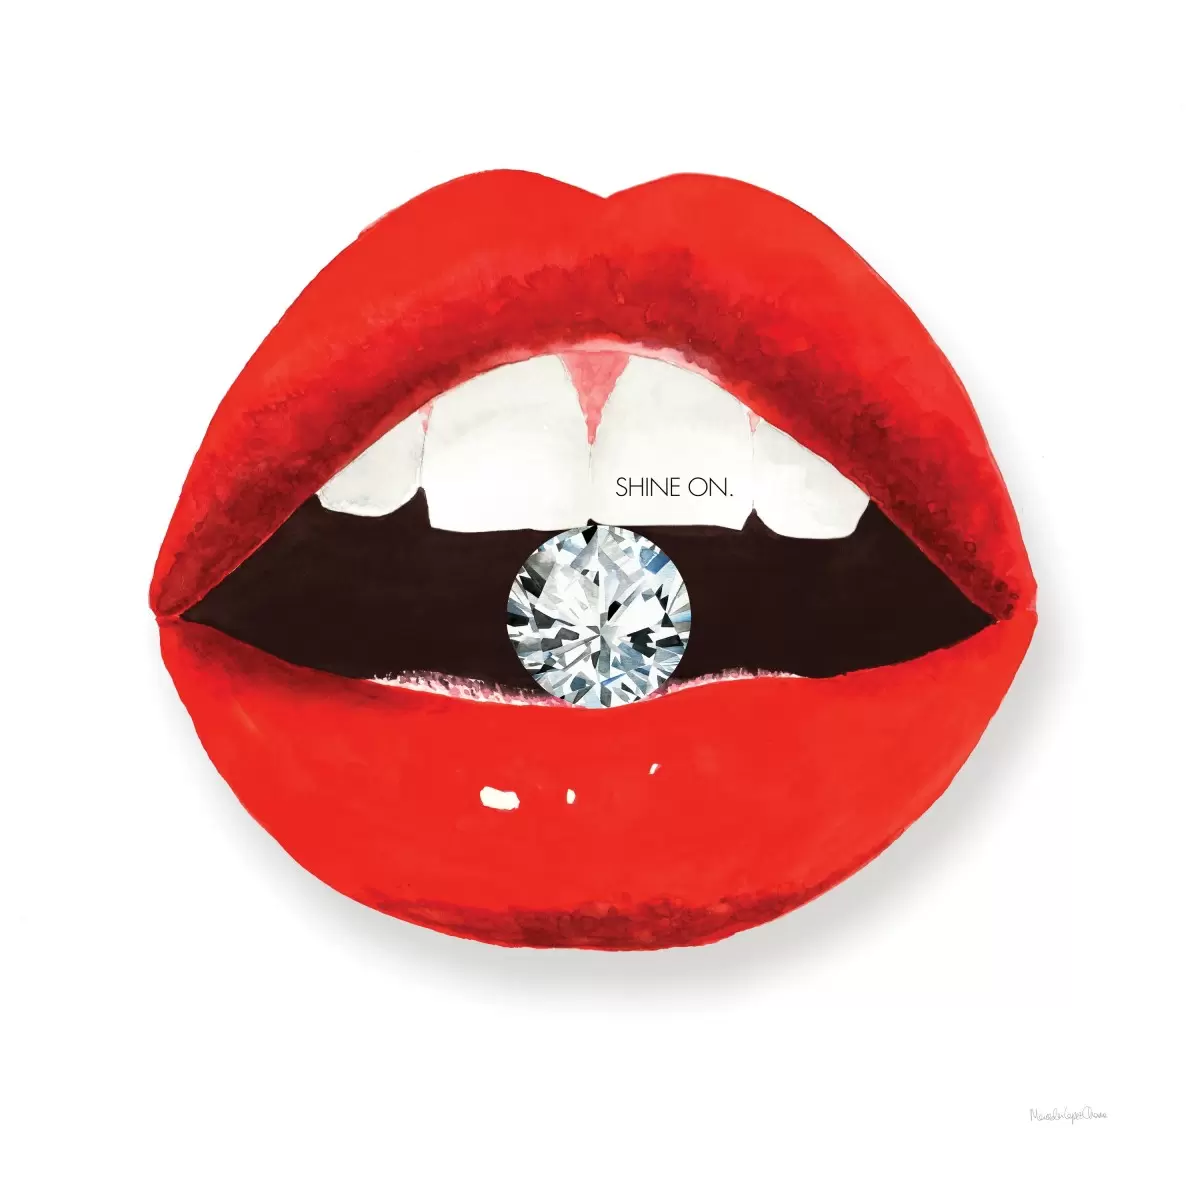 שפתיים חמות II - Mercedes Lopez Charro - תמונות רומנטיות לחדר שינה סטים בסגנון מודרני  - מק''ט: 364075